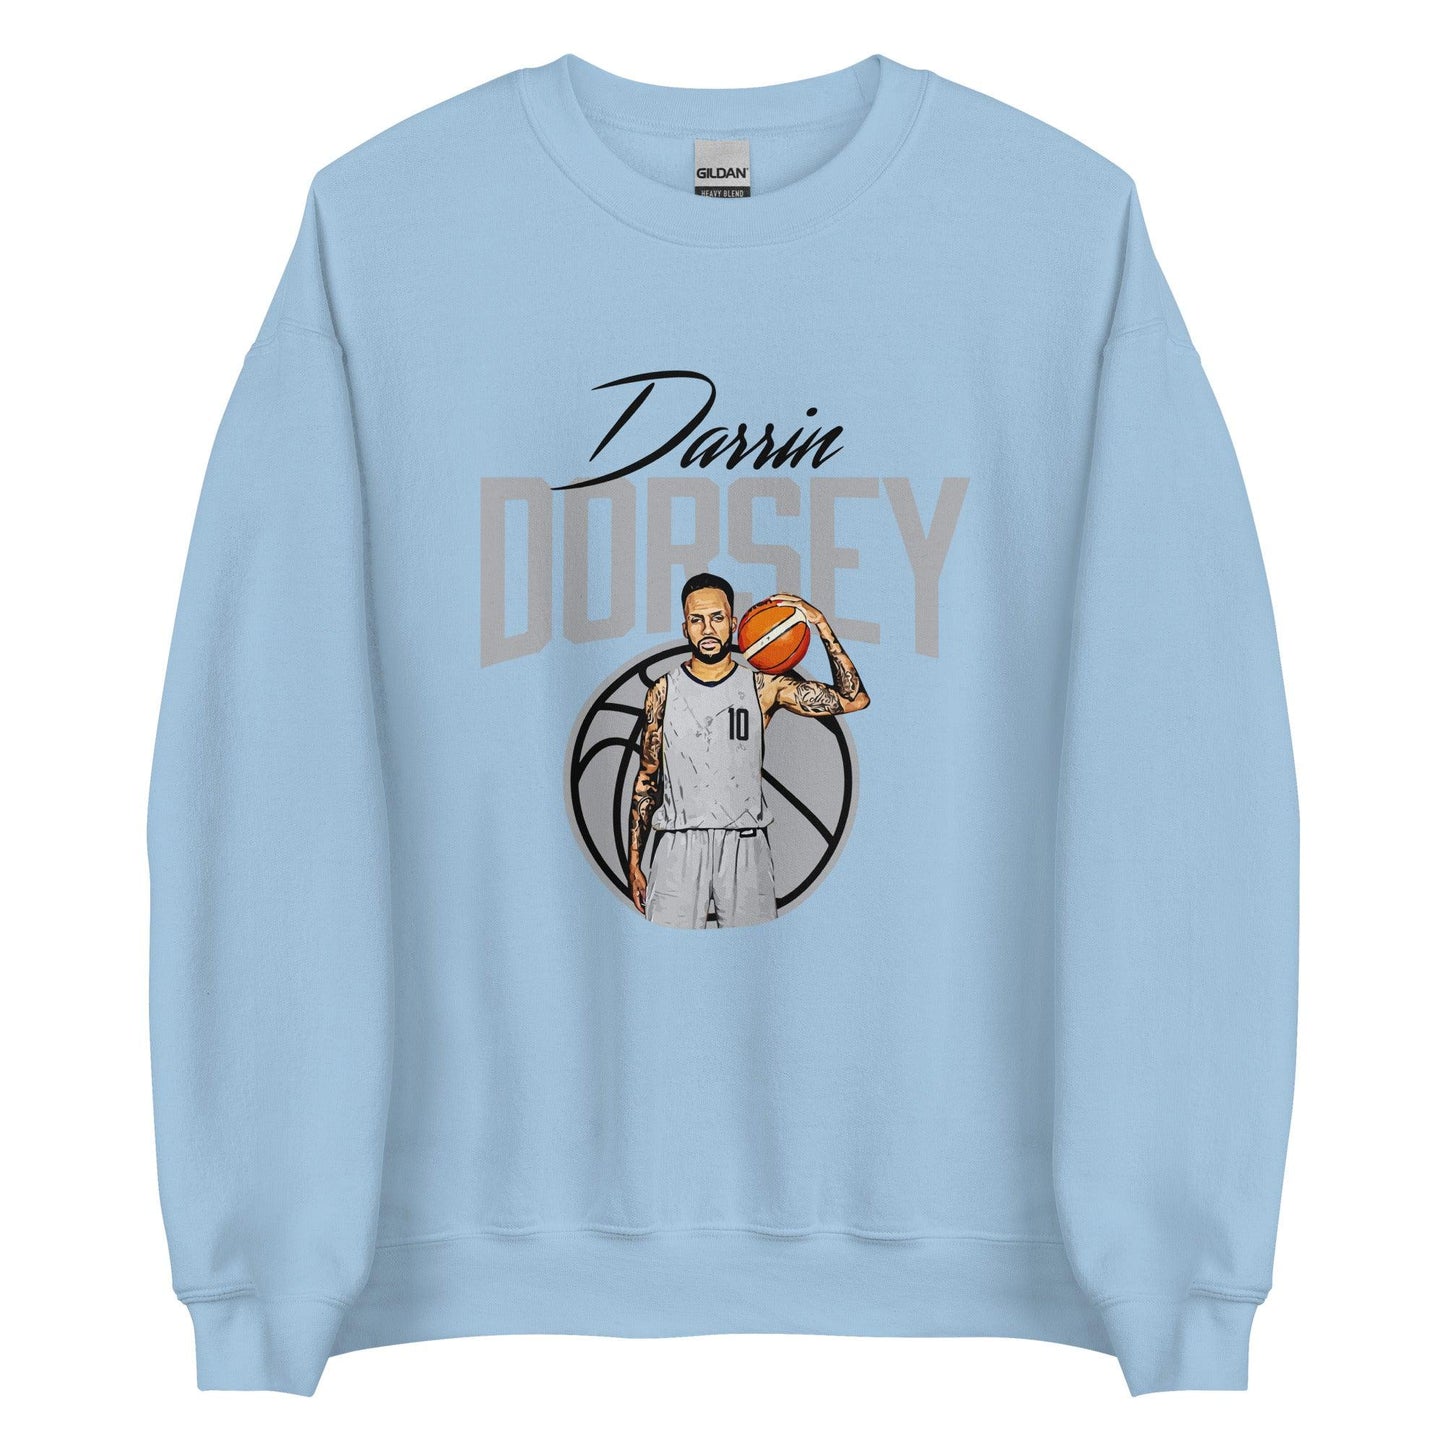 Darrin Dorsey "Gameday" Sweatshirt - Fan Arch